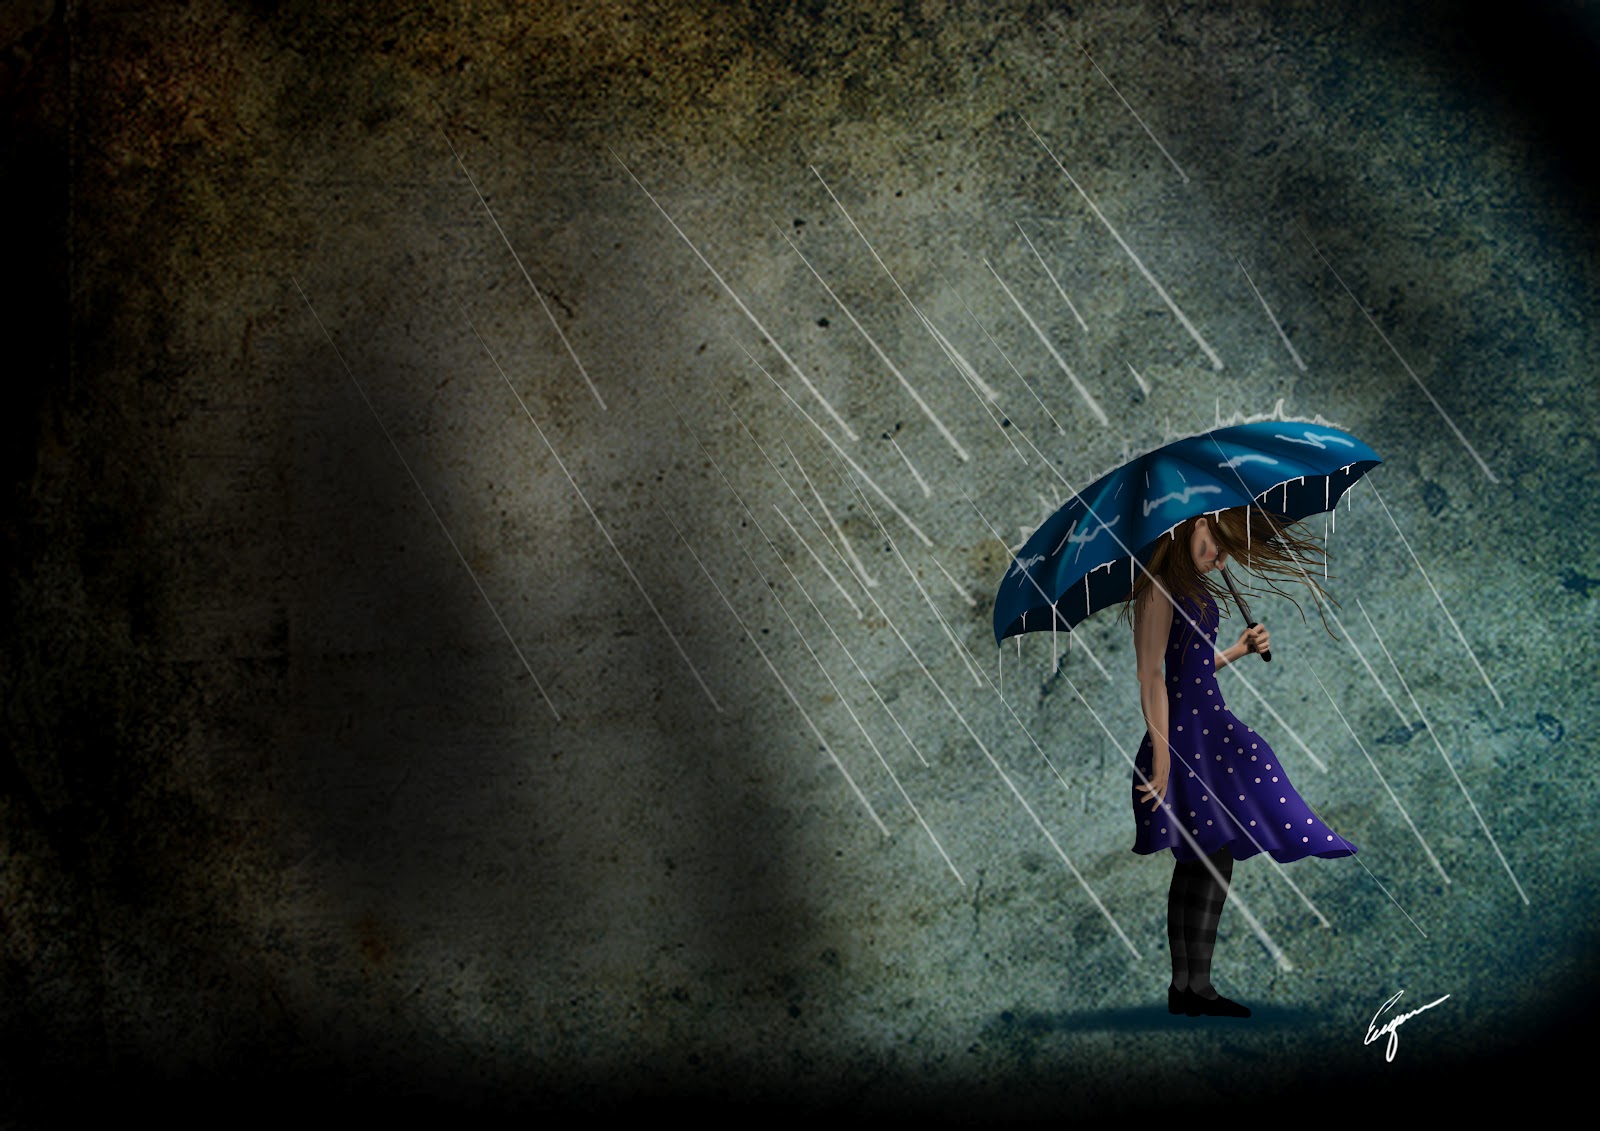 fond d'écran de pluie triste,bleu,parapluie,l'eau,humain,pluie